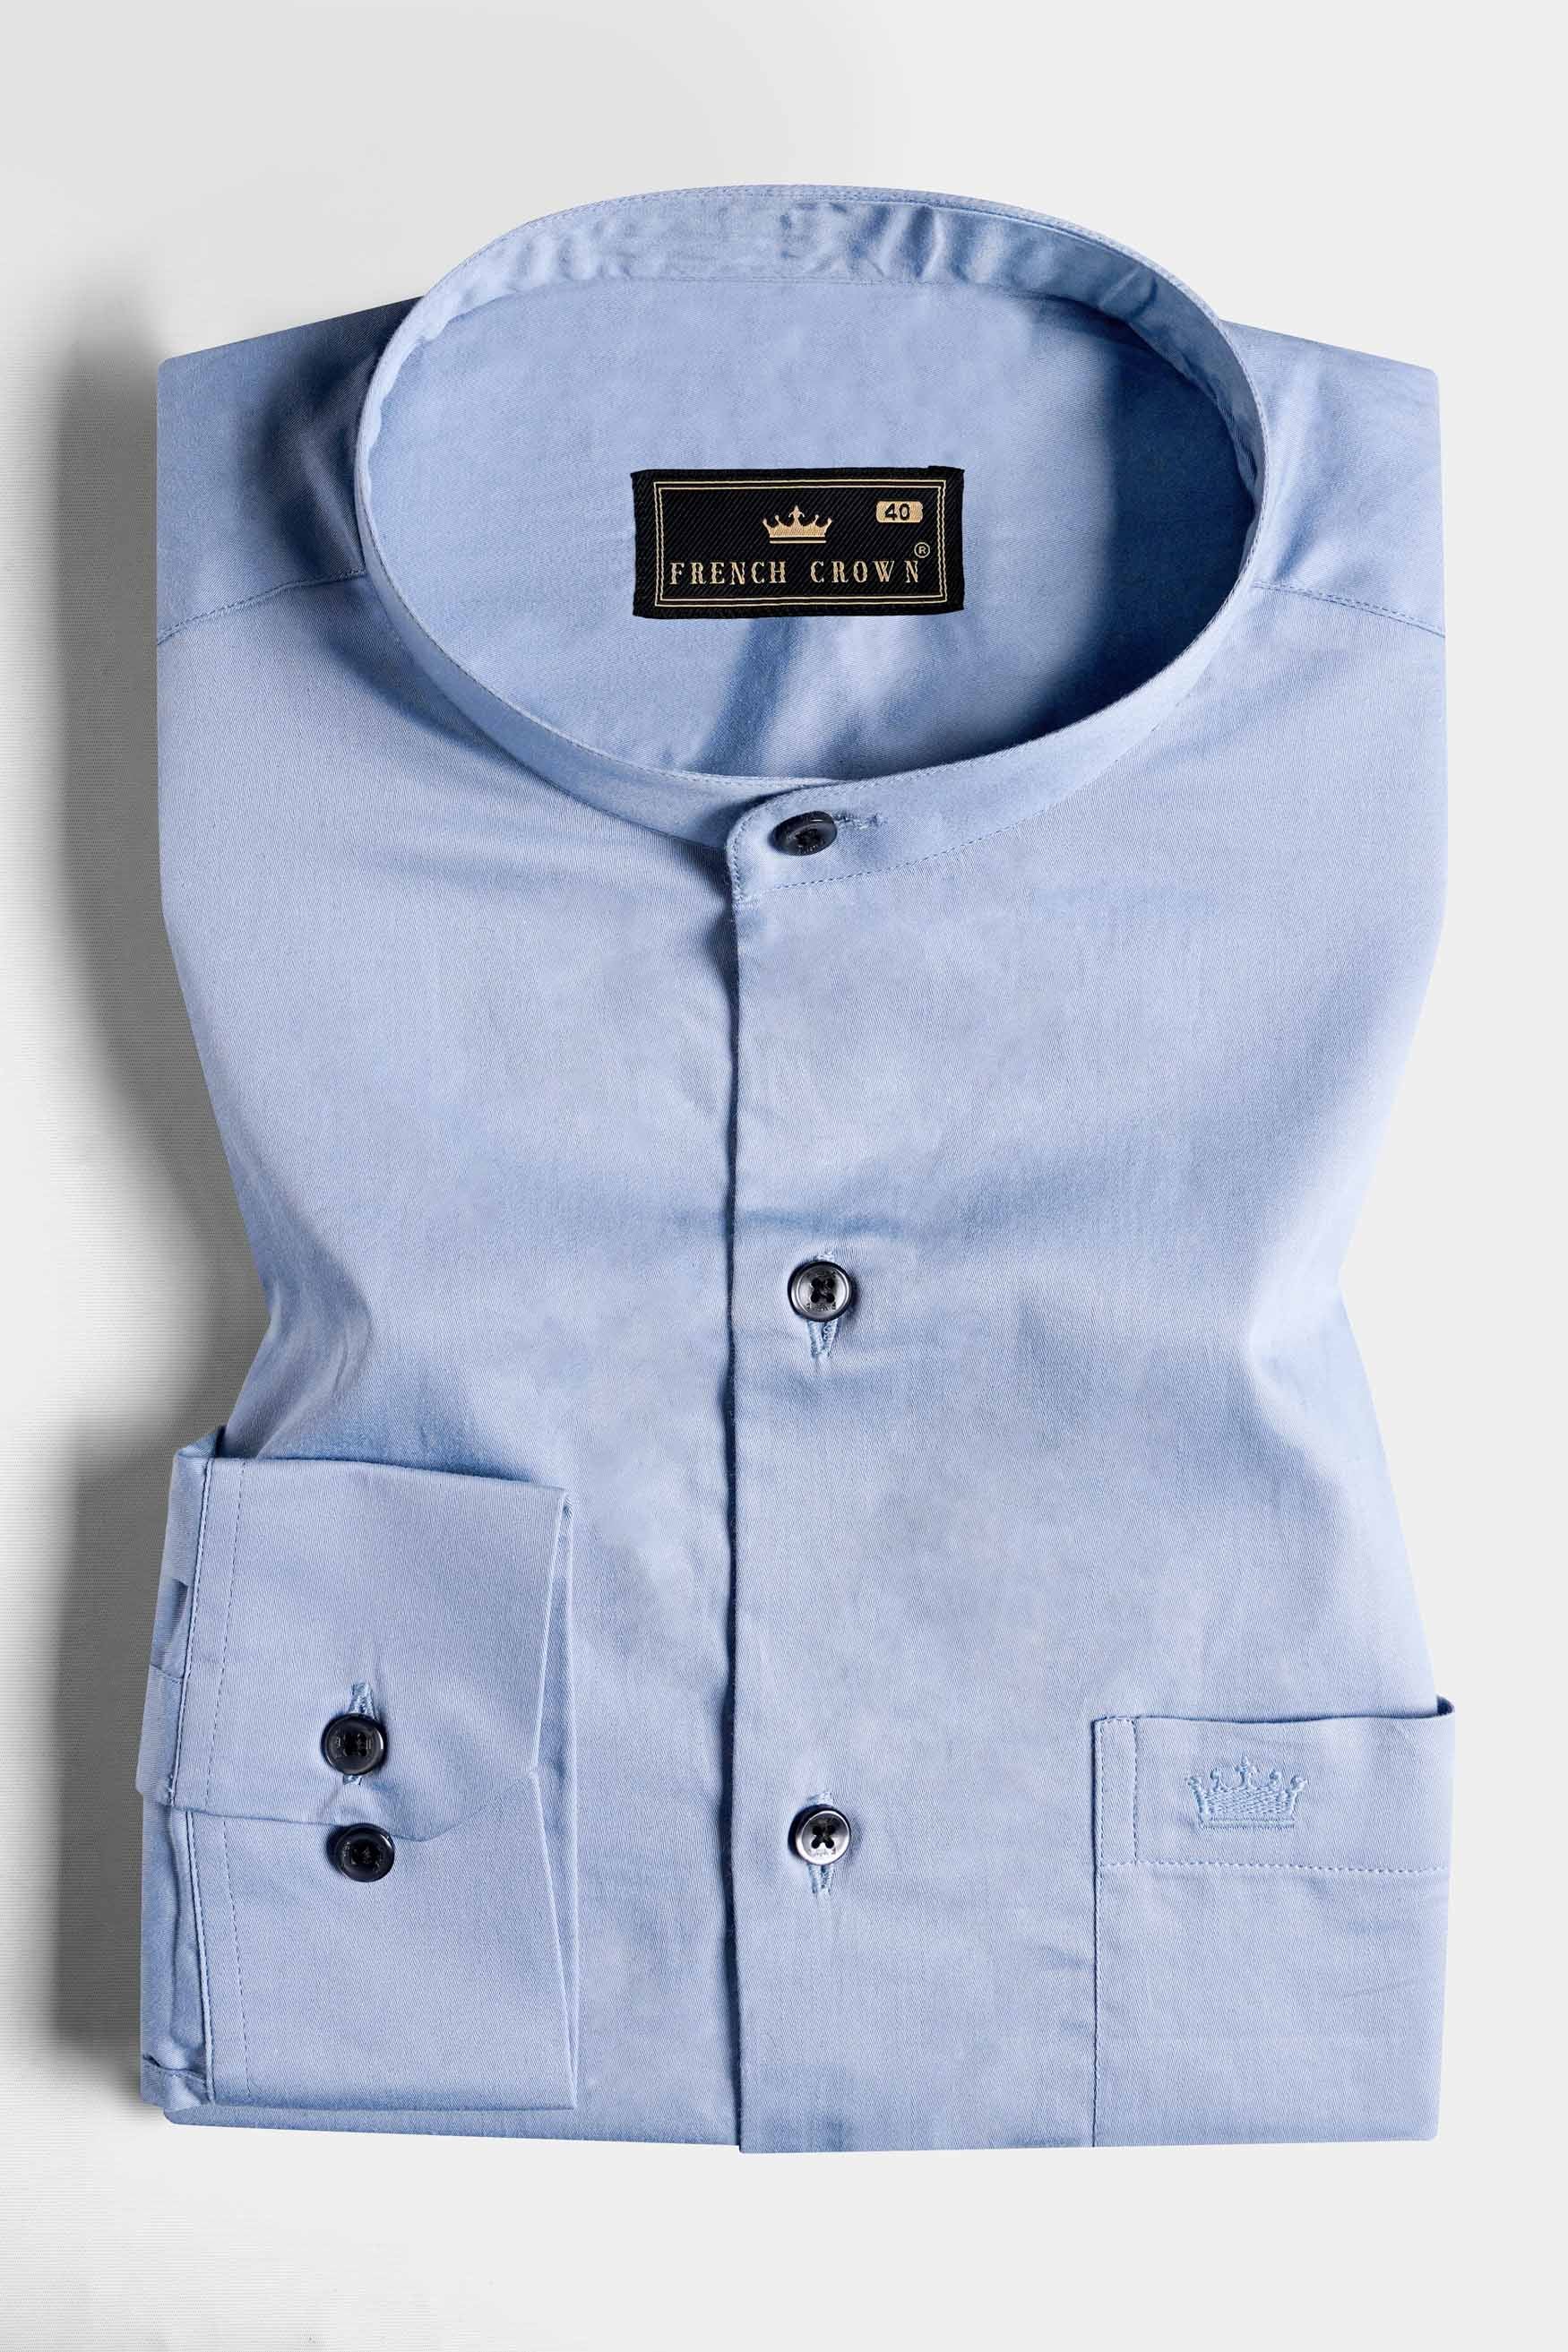 Periwinkle Blue Subtle Sheen Super Soft Premium Cotton Mandarin Shirt